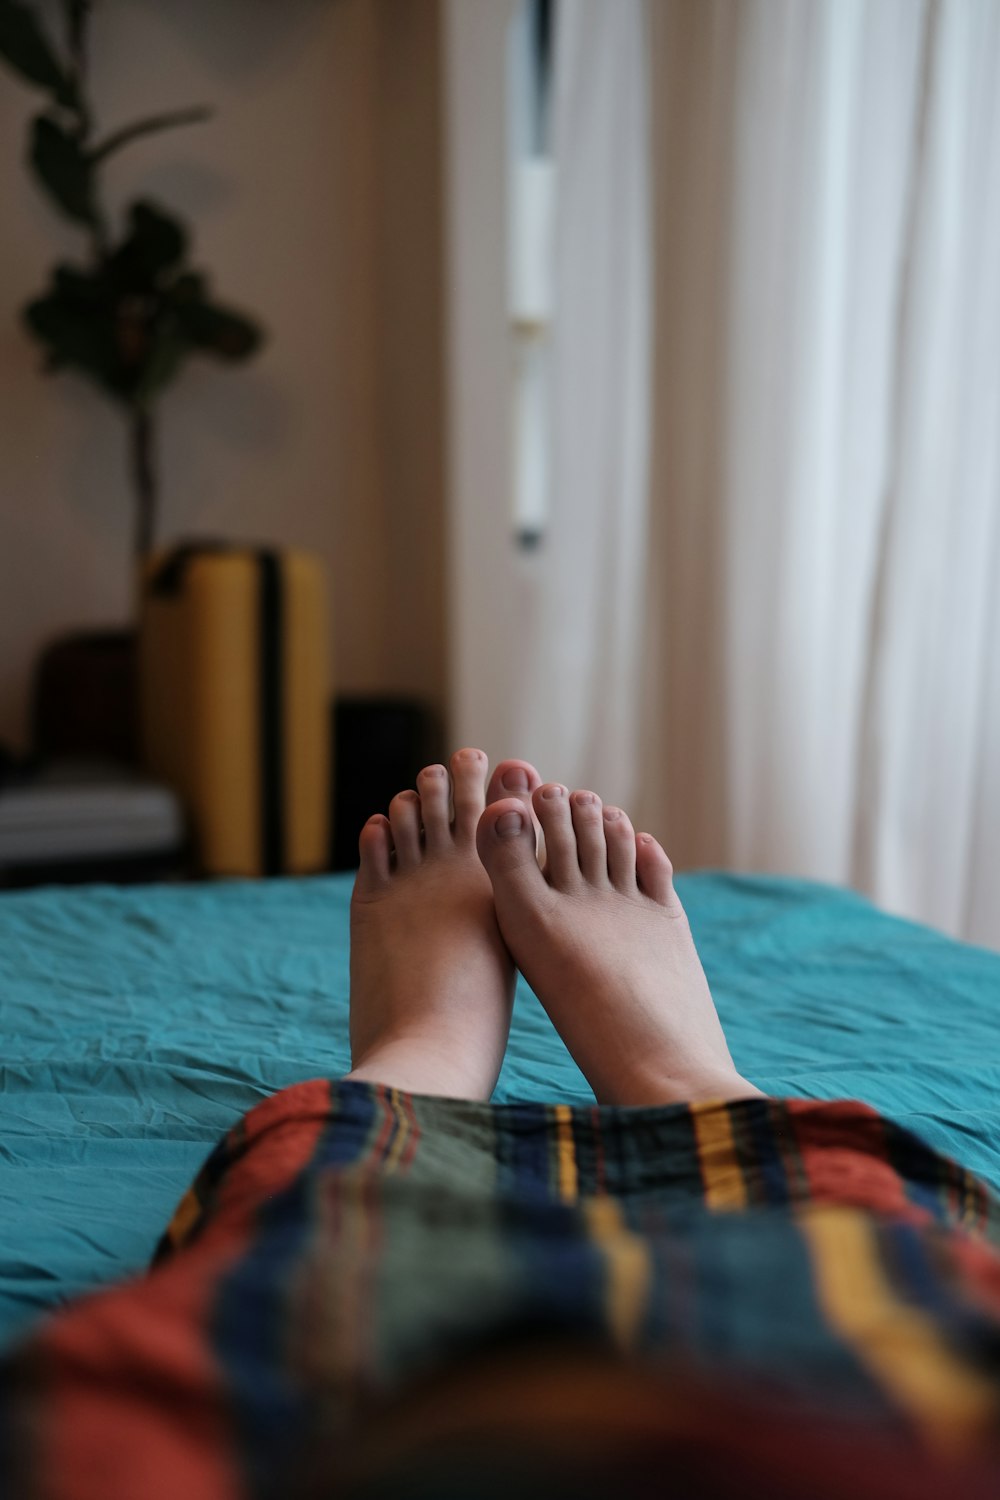 ベッドに横たわる青と赤の格子縞のスカートの人